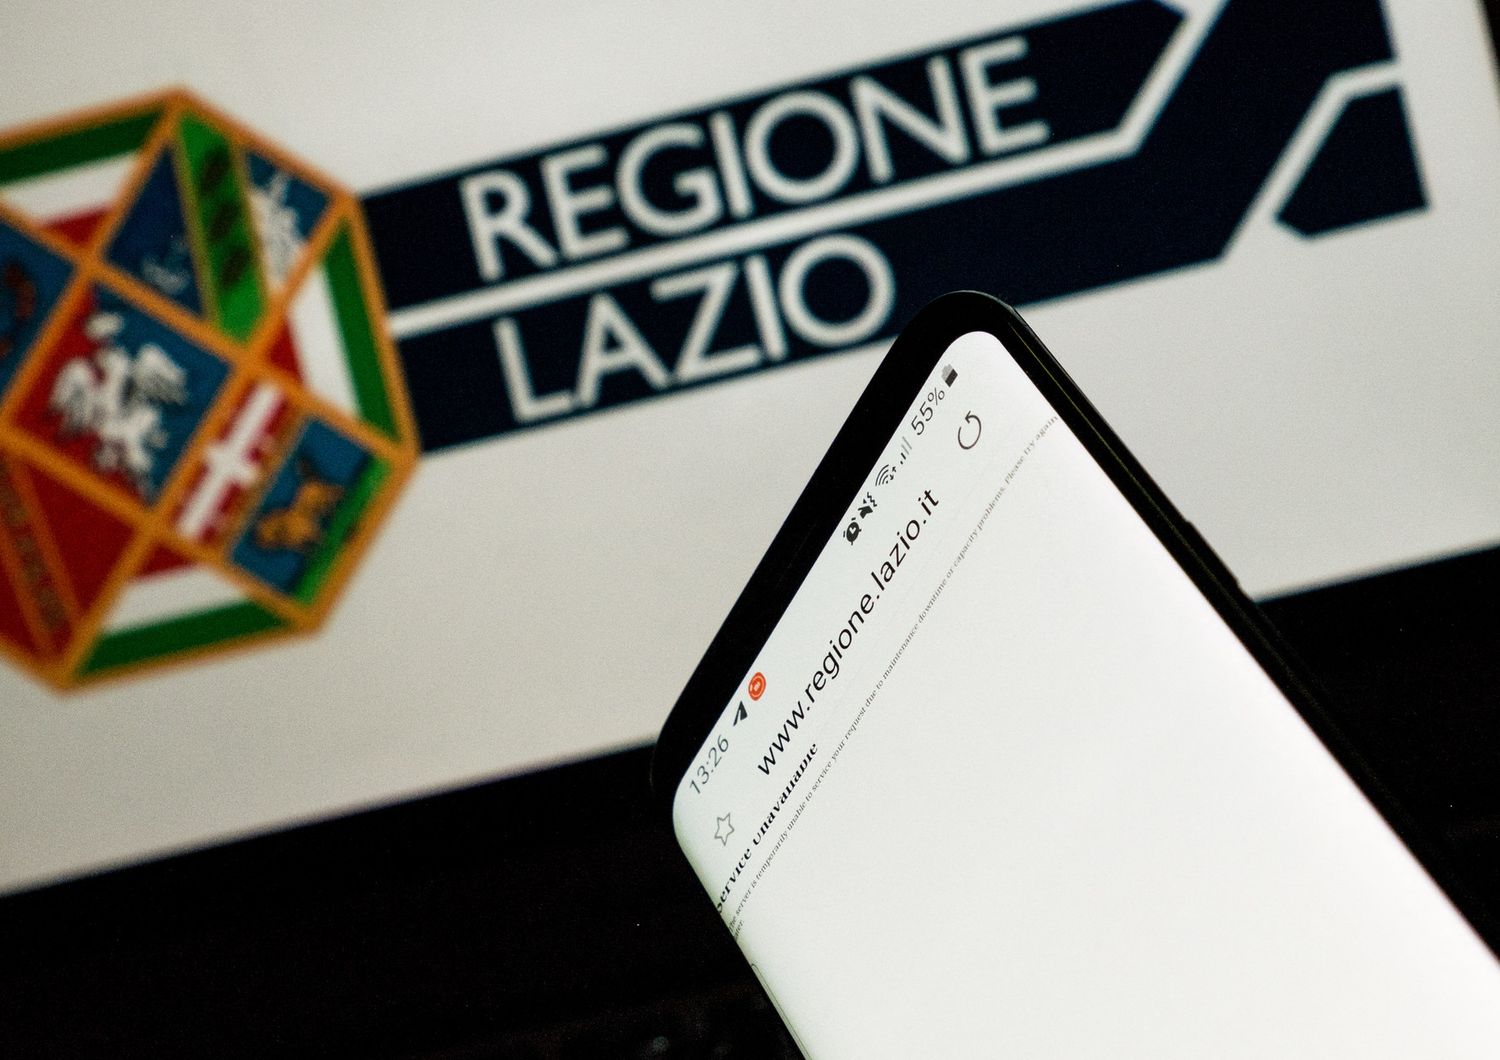 Attacco hacker Regione Lazio